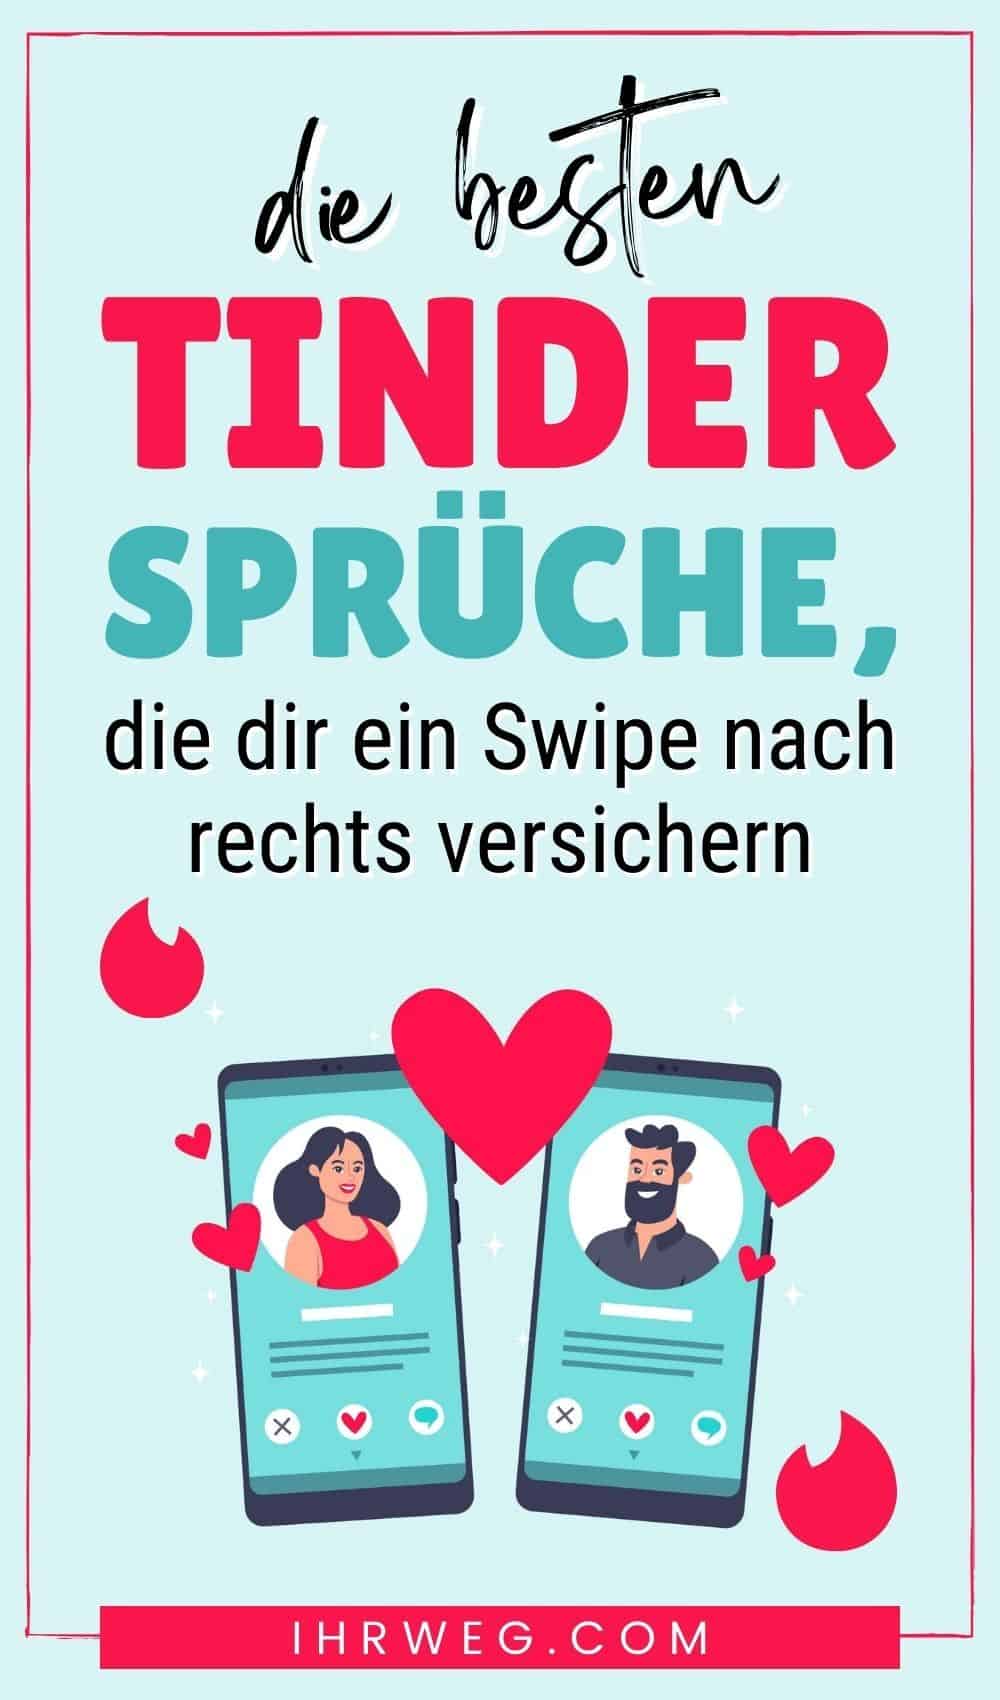 Whiplr ist die neue Dating-App für Fetisch-Sex